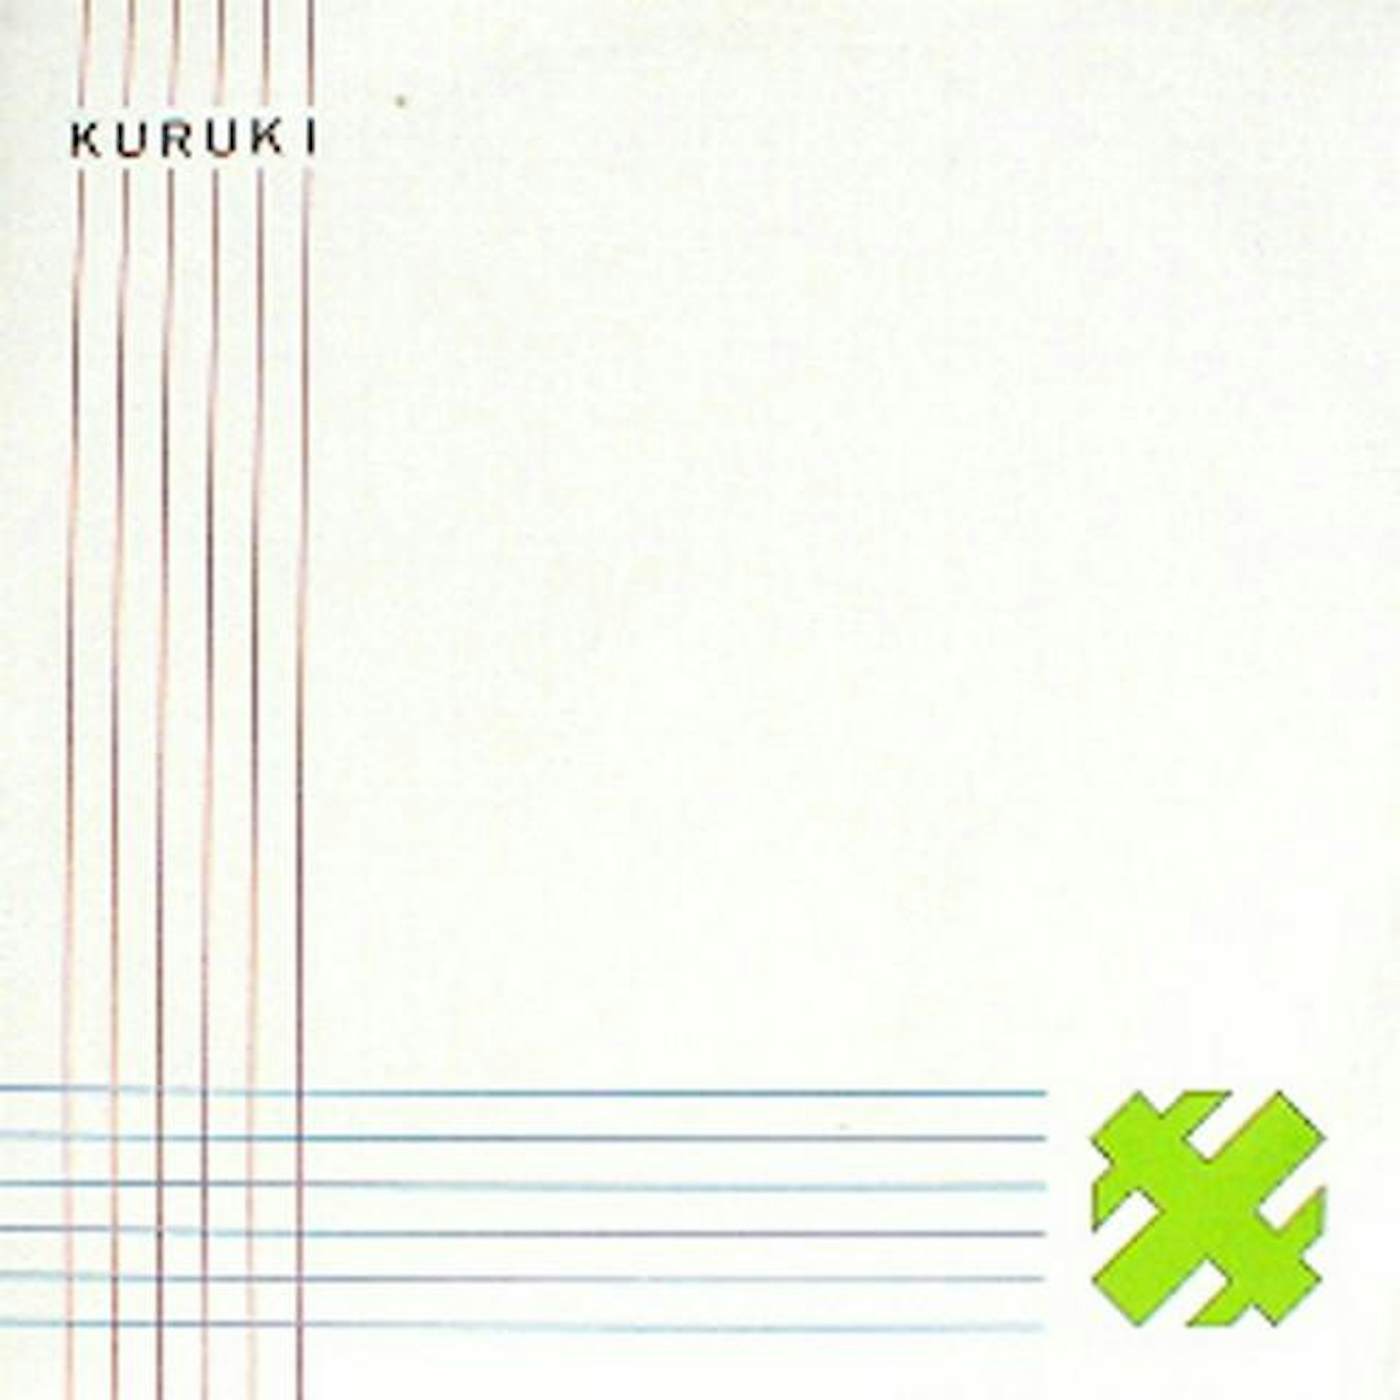 Kuruki